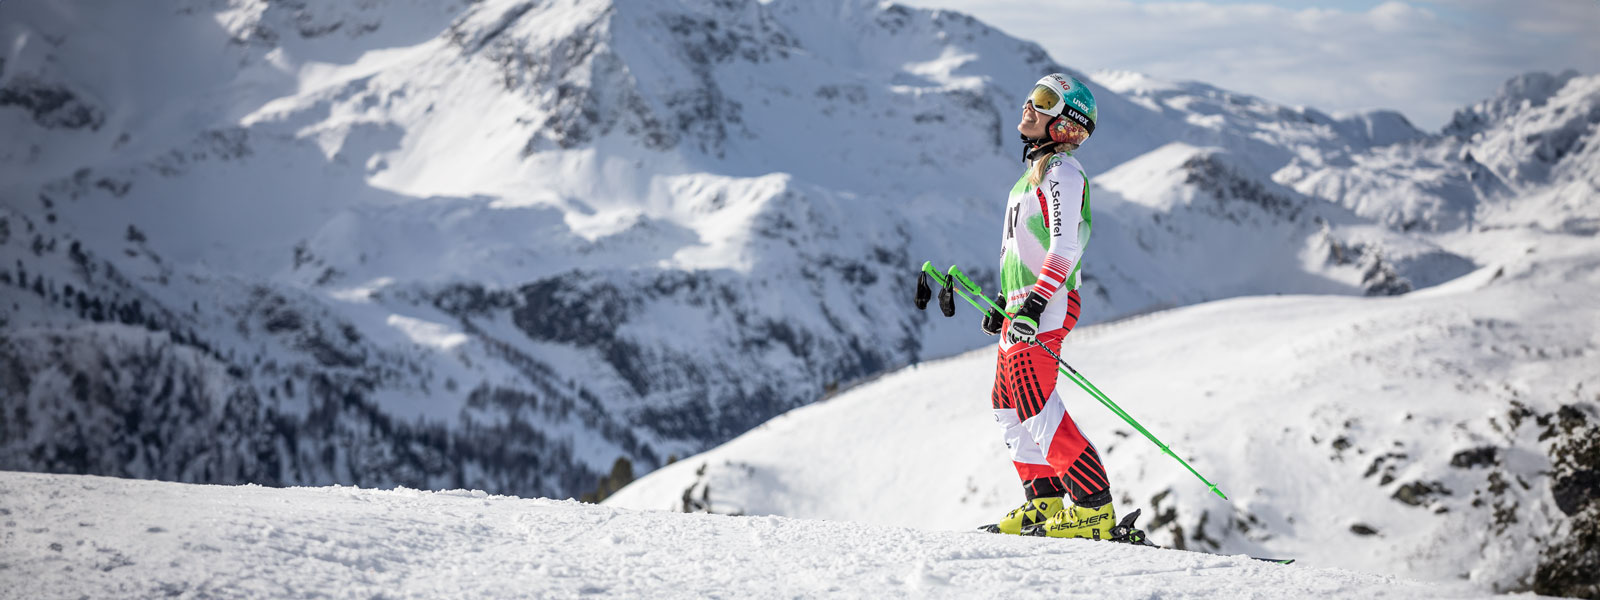 Ski -chauffeur in een rood en wit racepak glimlacht en met de stokjes in haar handen voor een enorme bergketen